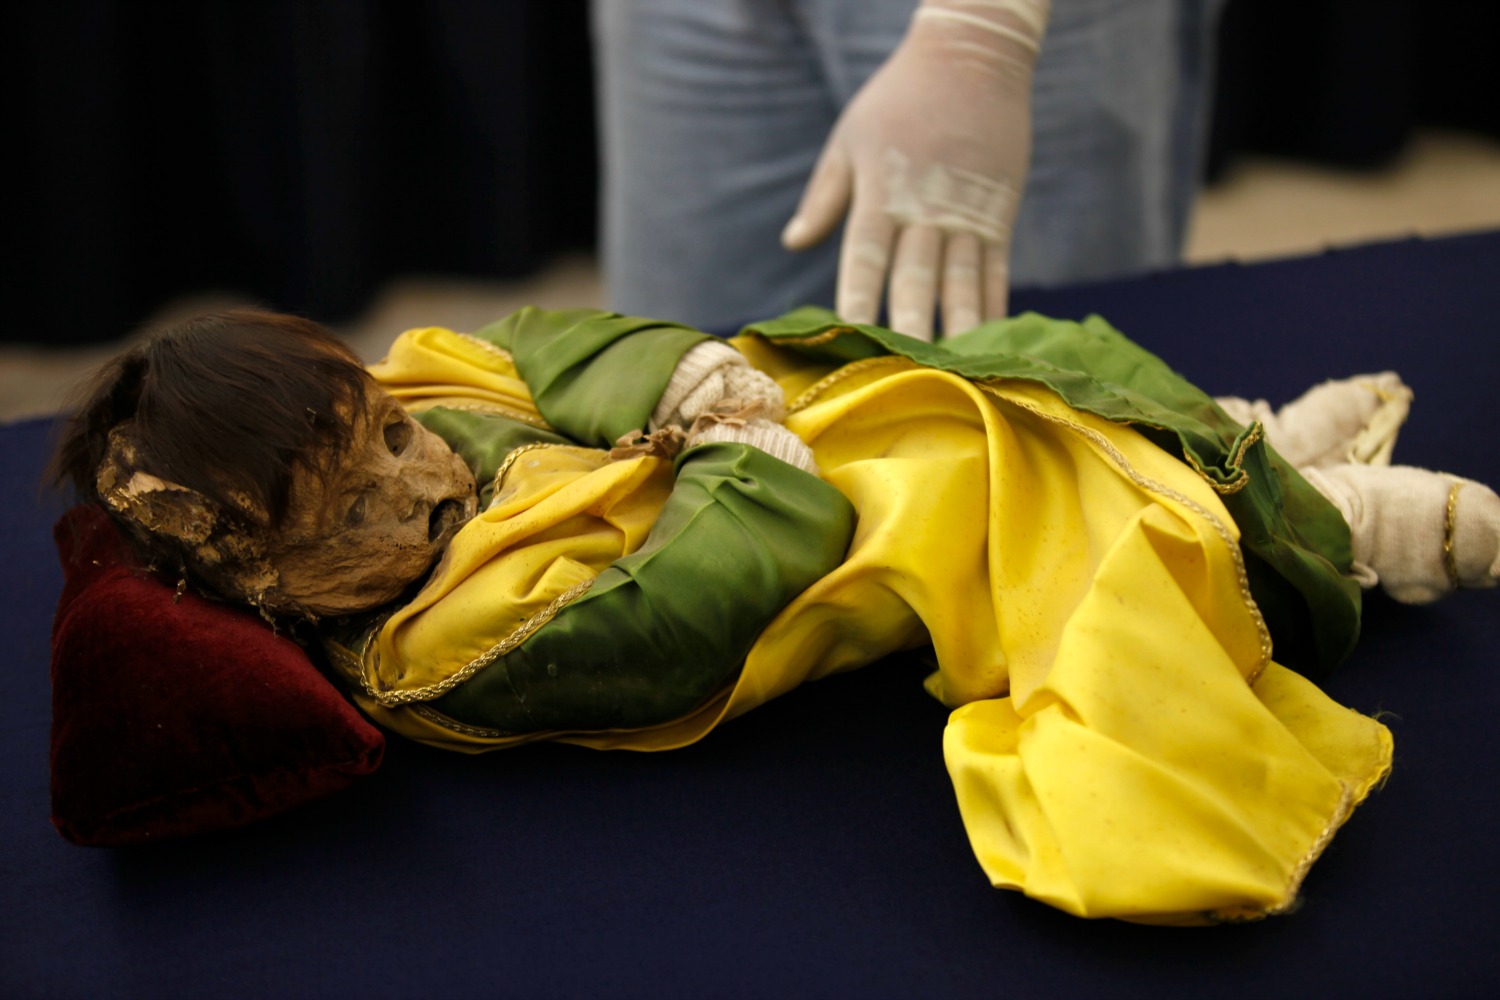 Frozen mummy of Incan boy reveal unknown genetic lineage